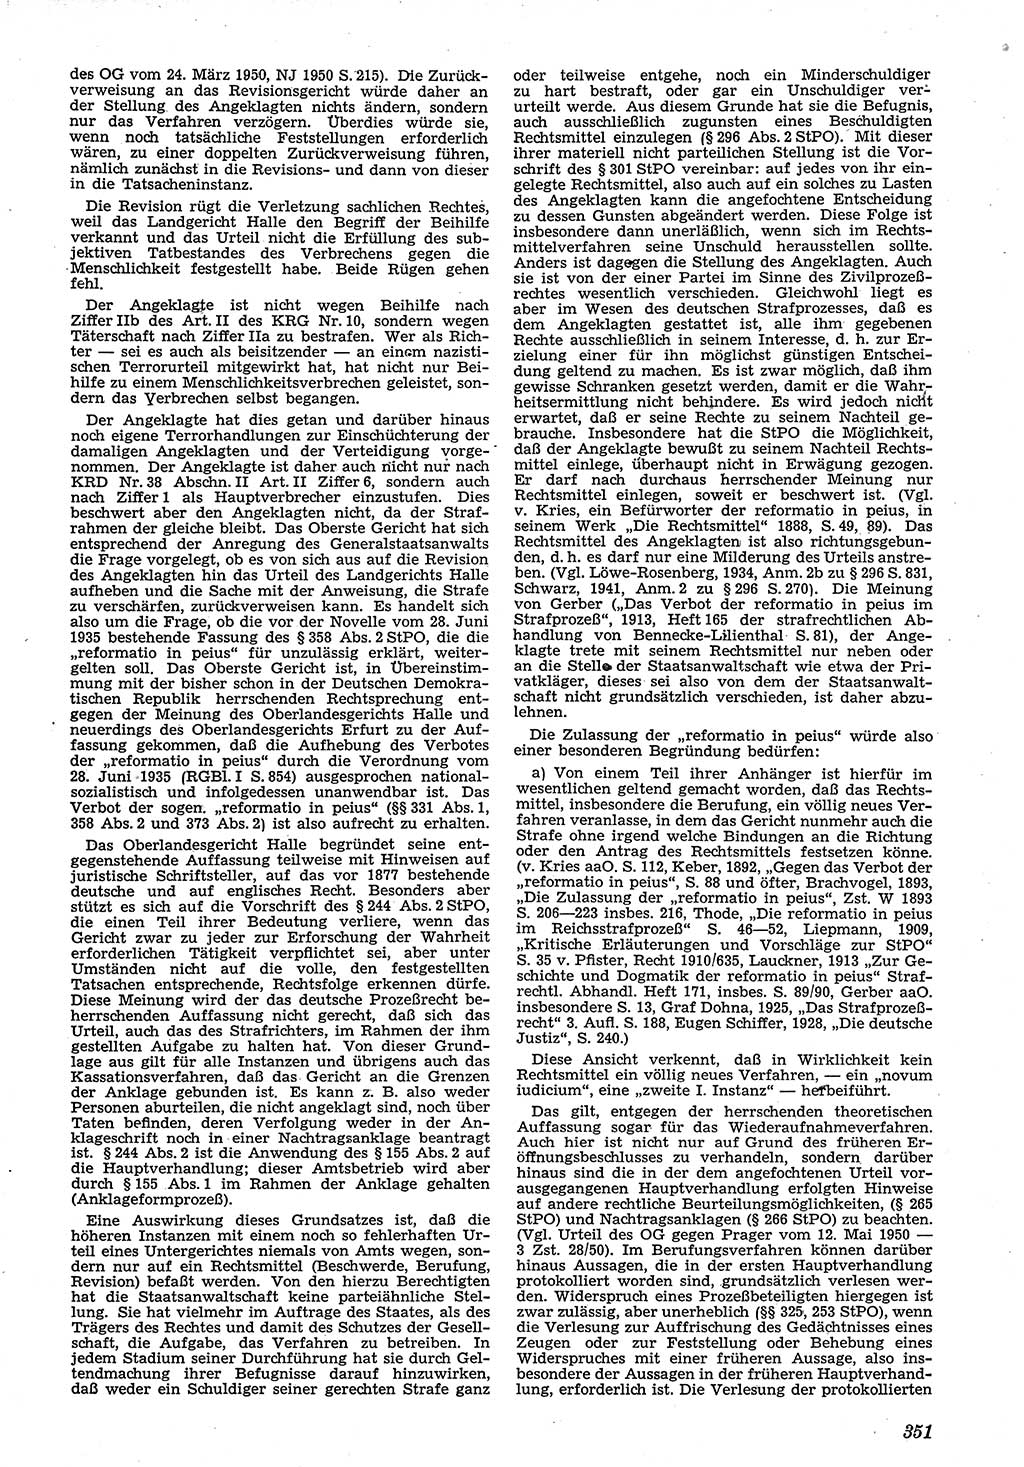 Neue Justiz (NJ), Zeitschrift für Recht und Rechtswissenschaft [Deutsche Demokratische Republik (DDR)], 4. Jahrgang 1950, Seite 351 (NJ DDR 1950, S. 351)